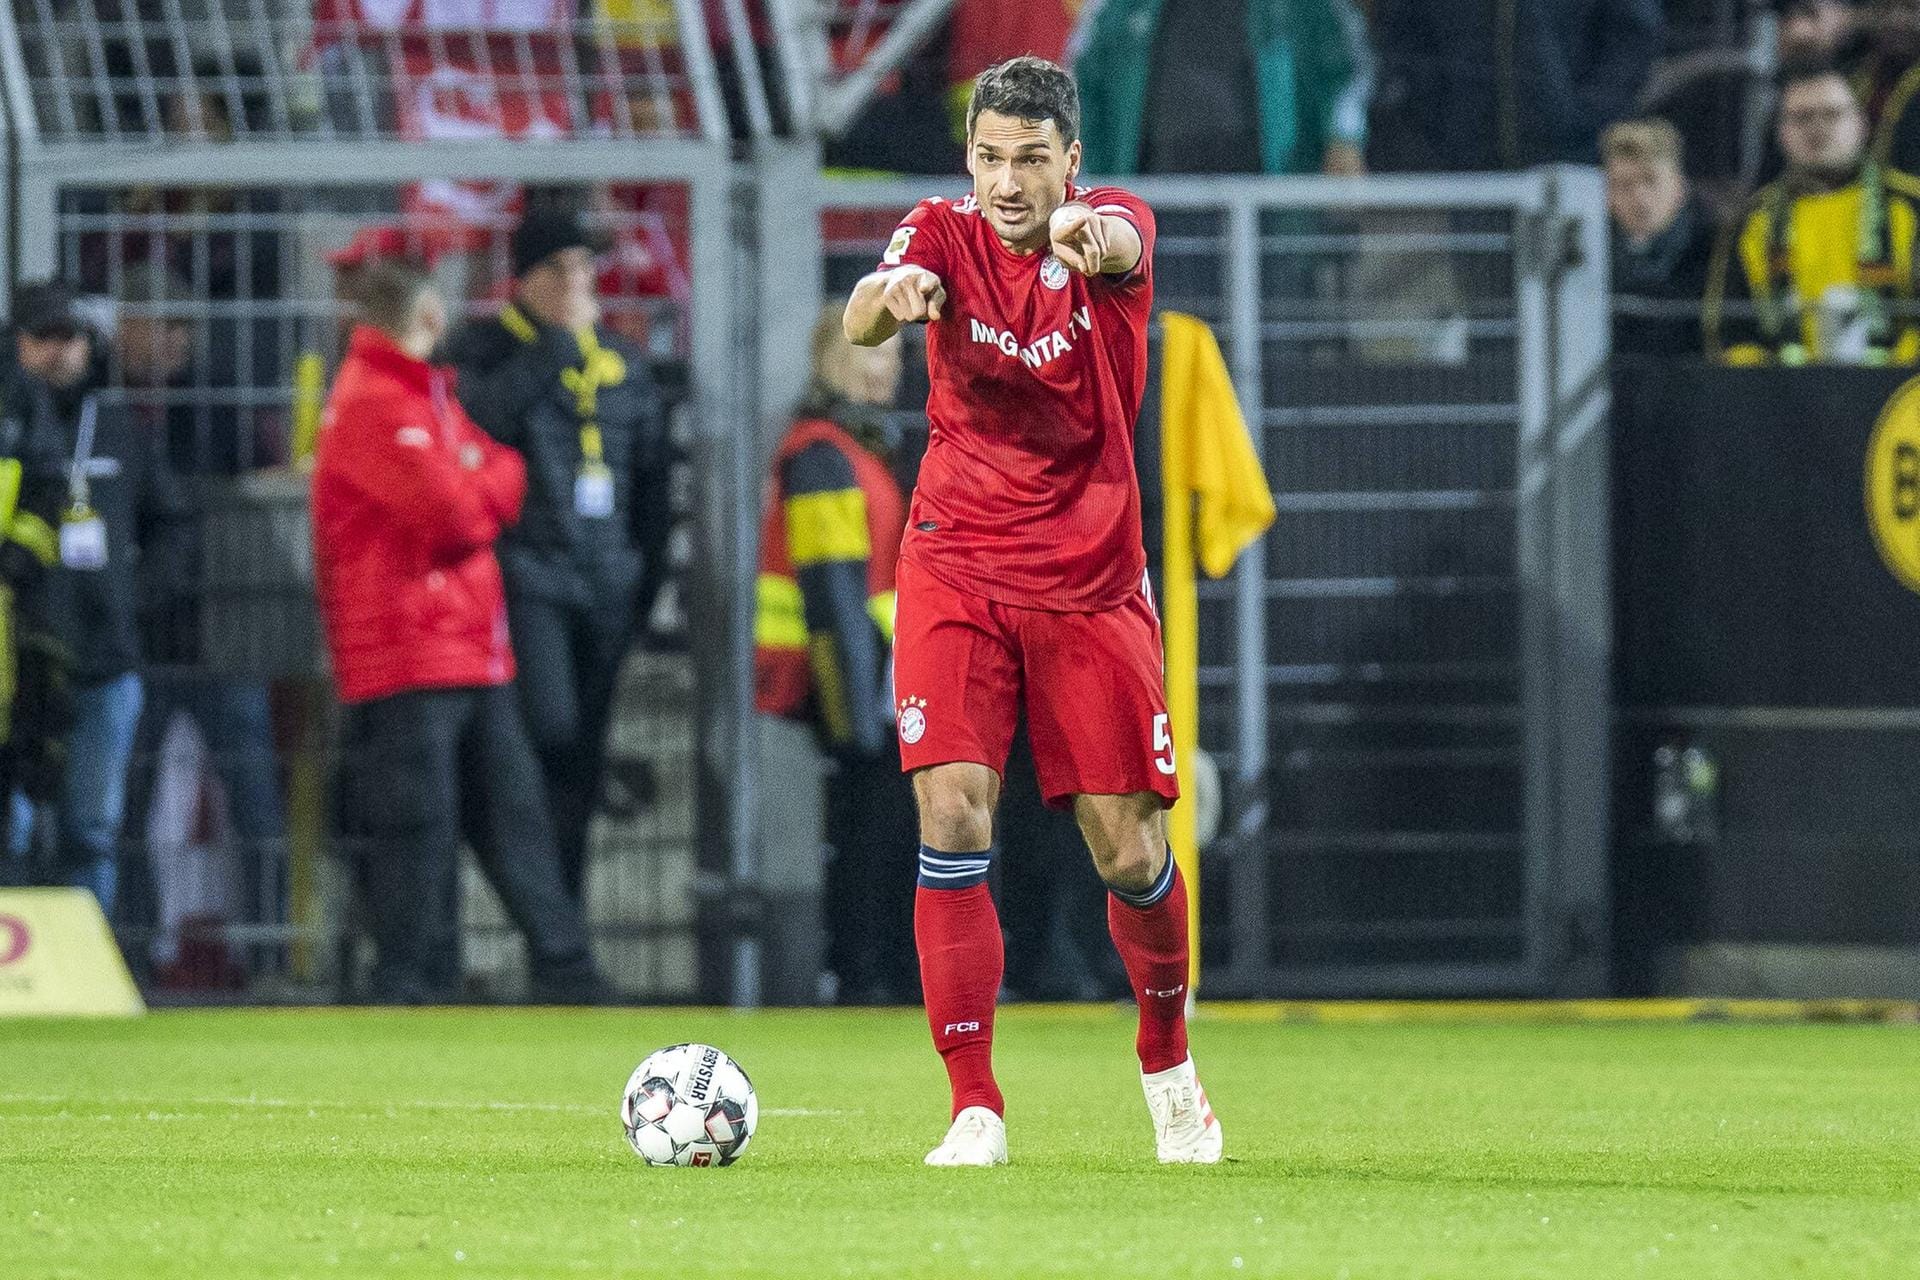 Platz 6 – Mats Hummels: Der deutsche Nationalspieler wechselte 2016 von Borussia Dortmund zum FC Bayern München. Ablösesumme: 35 Millionen Euro.